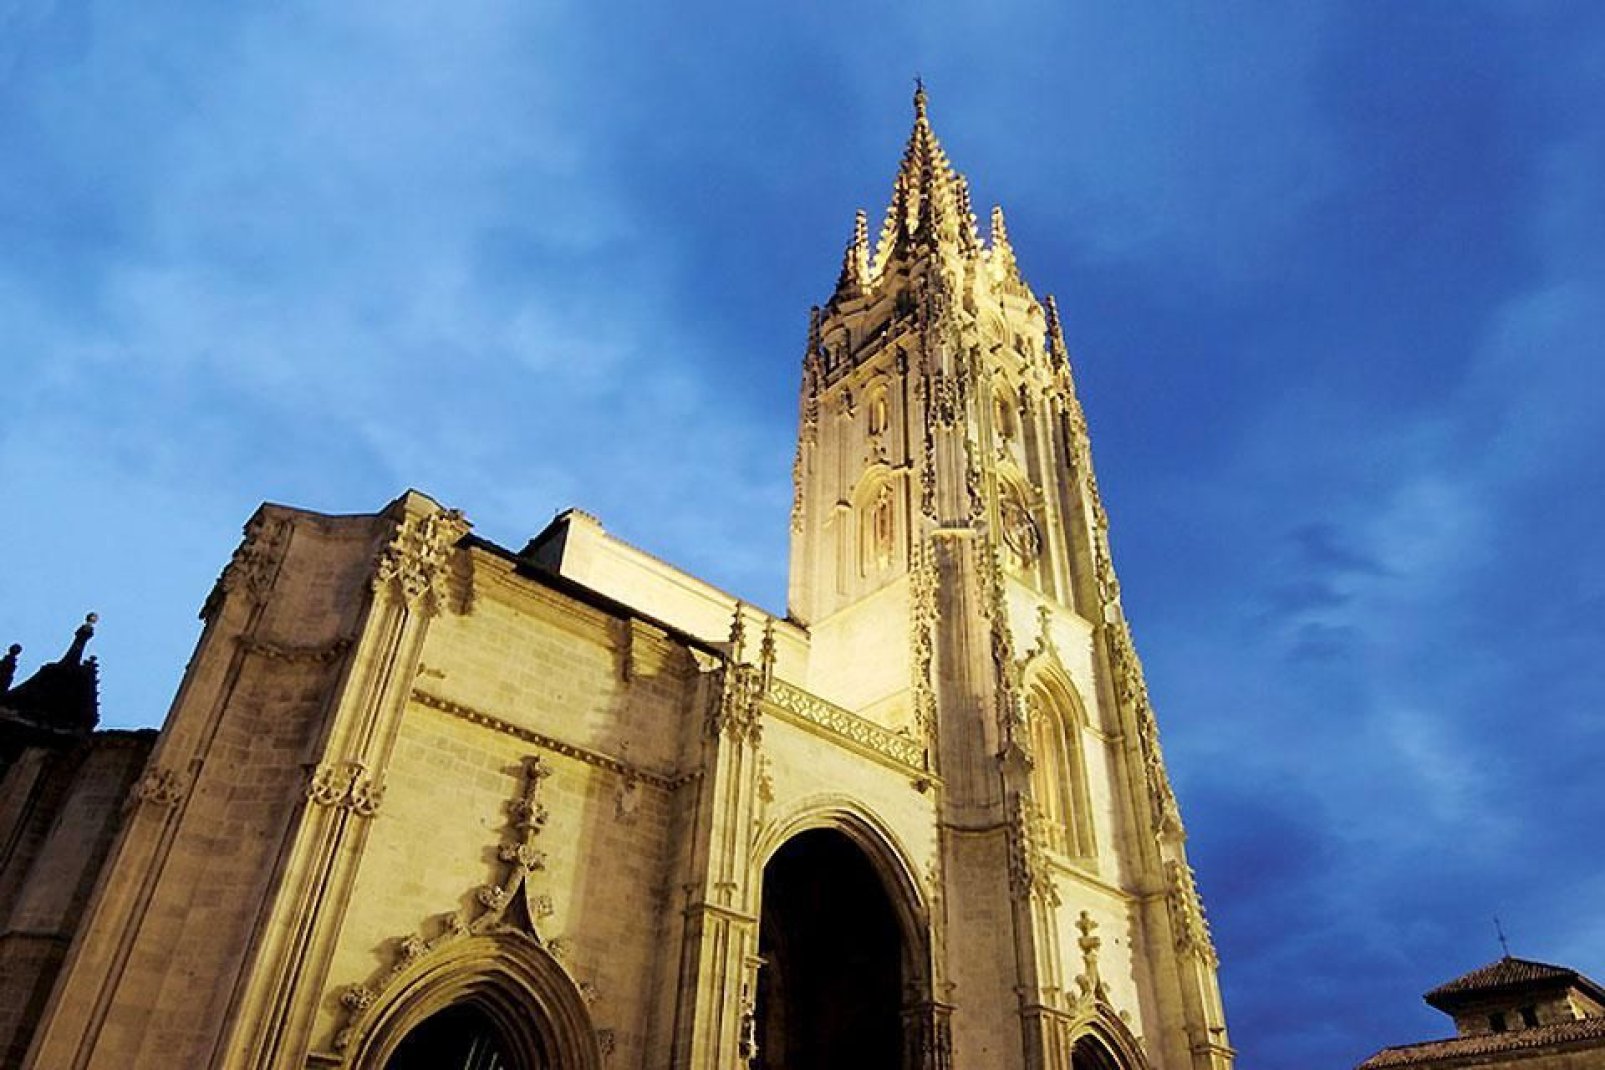 La catedral alberga un tesoro: la Cámara Santa, catalogada en el Patrimonio de la Humanidad de la Unesco.